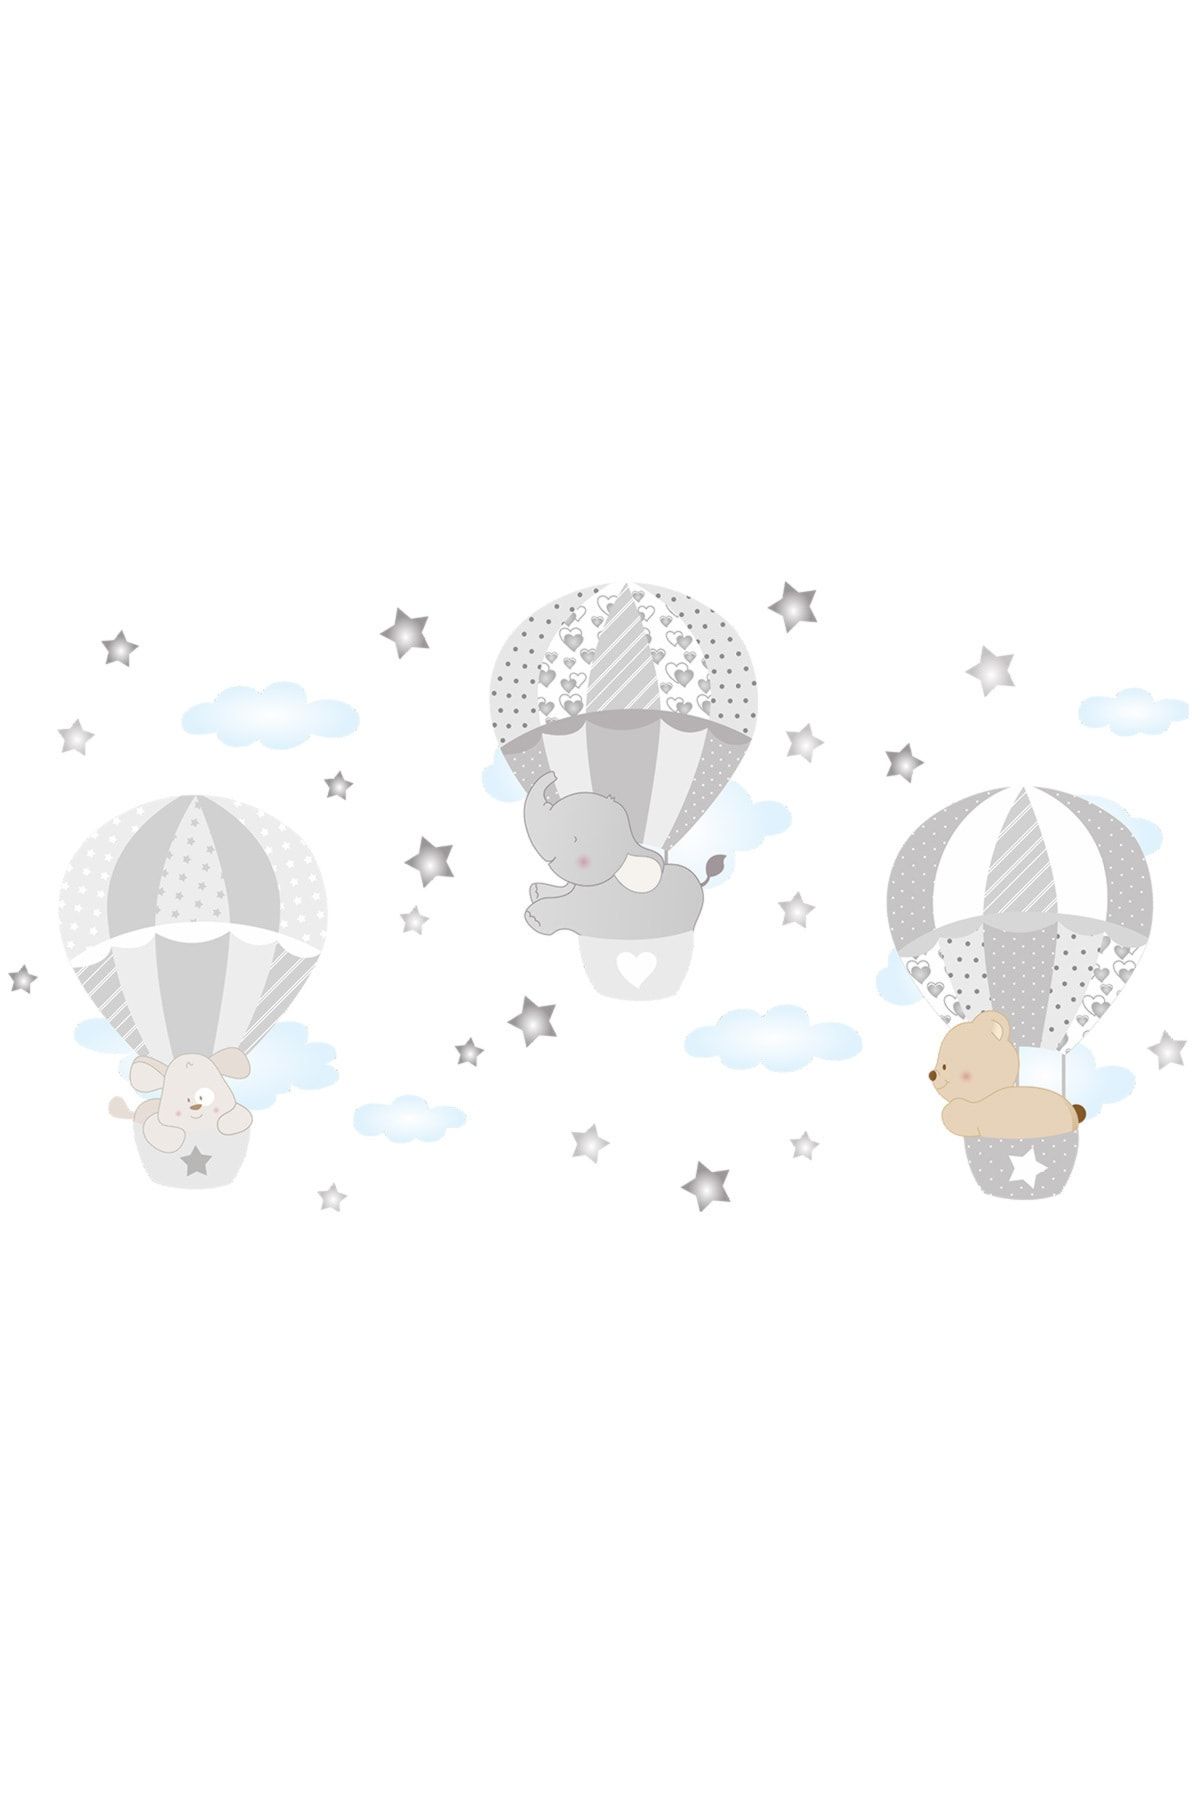 Dekor Loft Minik Rüyalar Uçan Balon Çocuk Odası Duvar Sticker